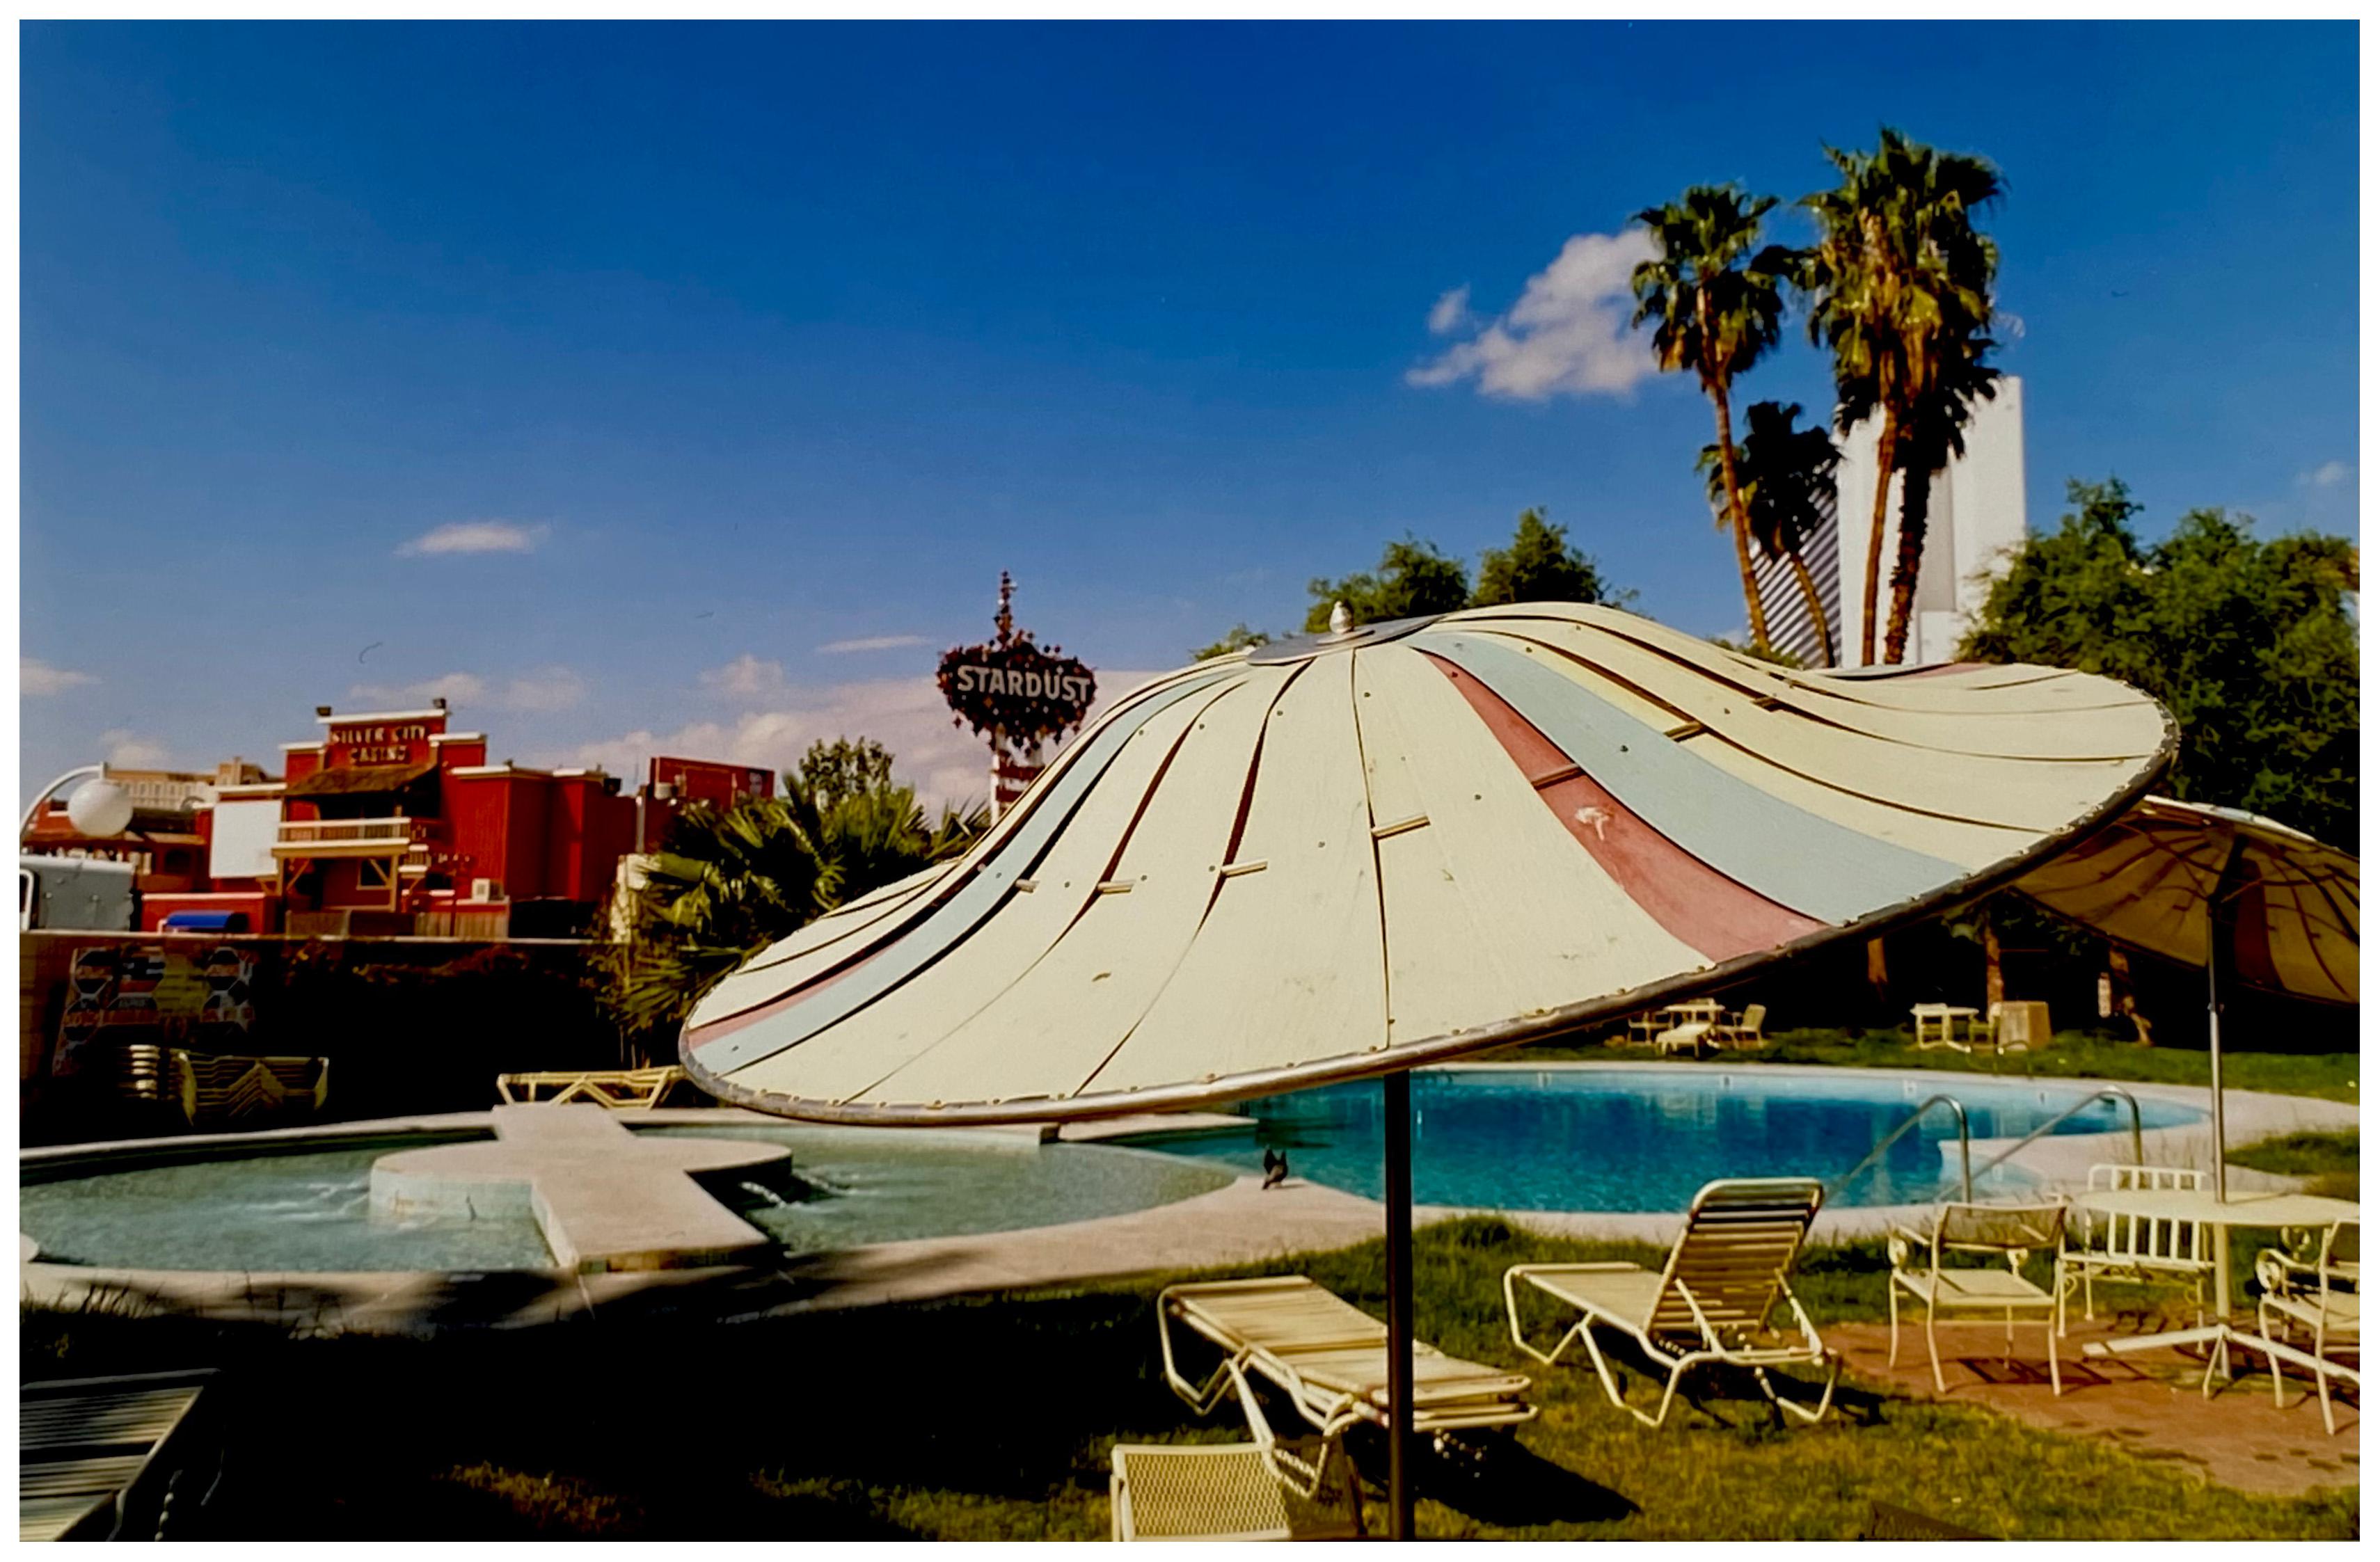 Poolside Parasol, El Morocco Motel, Las Vegas - American Color Photography